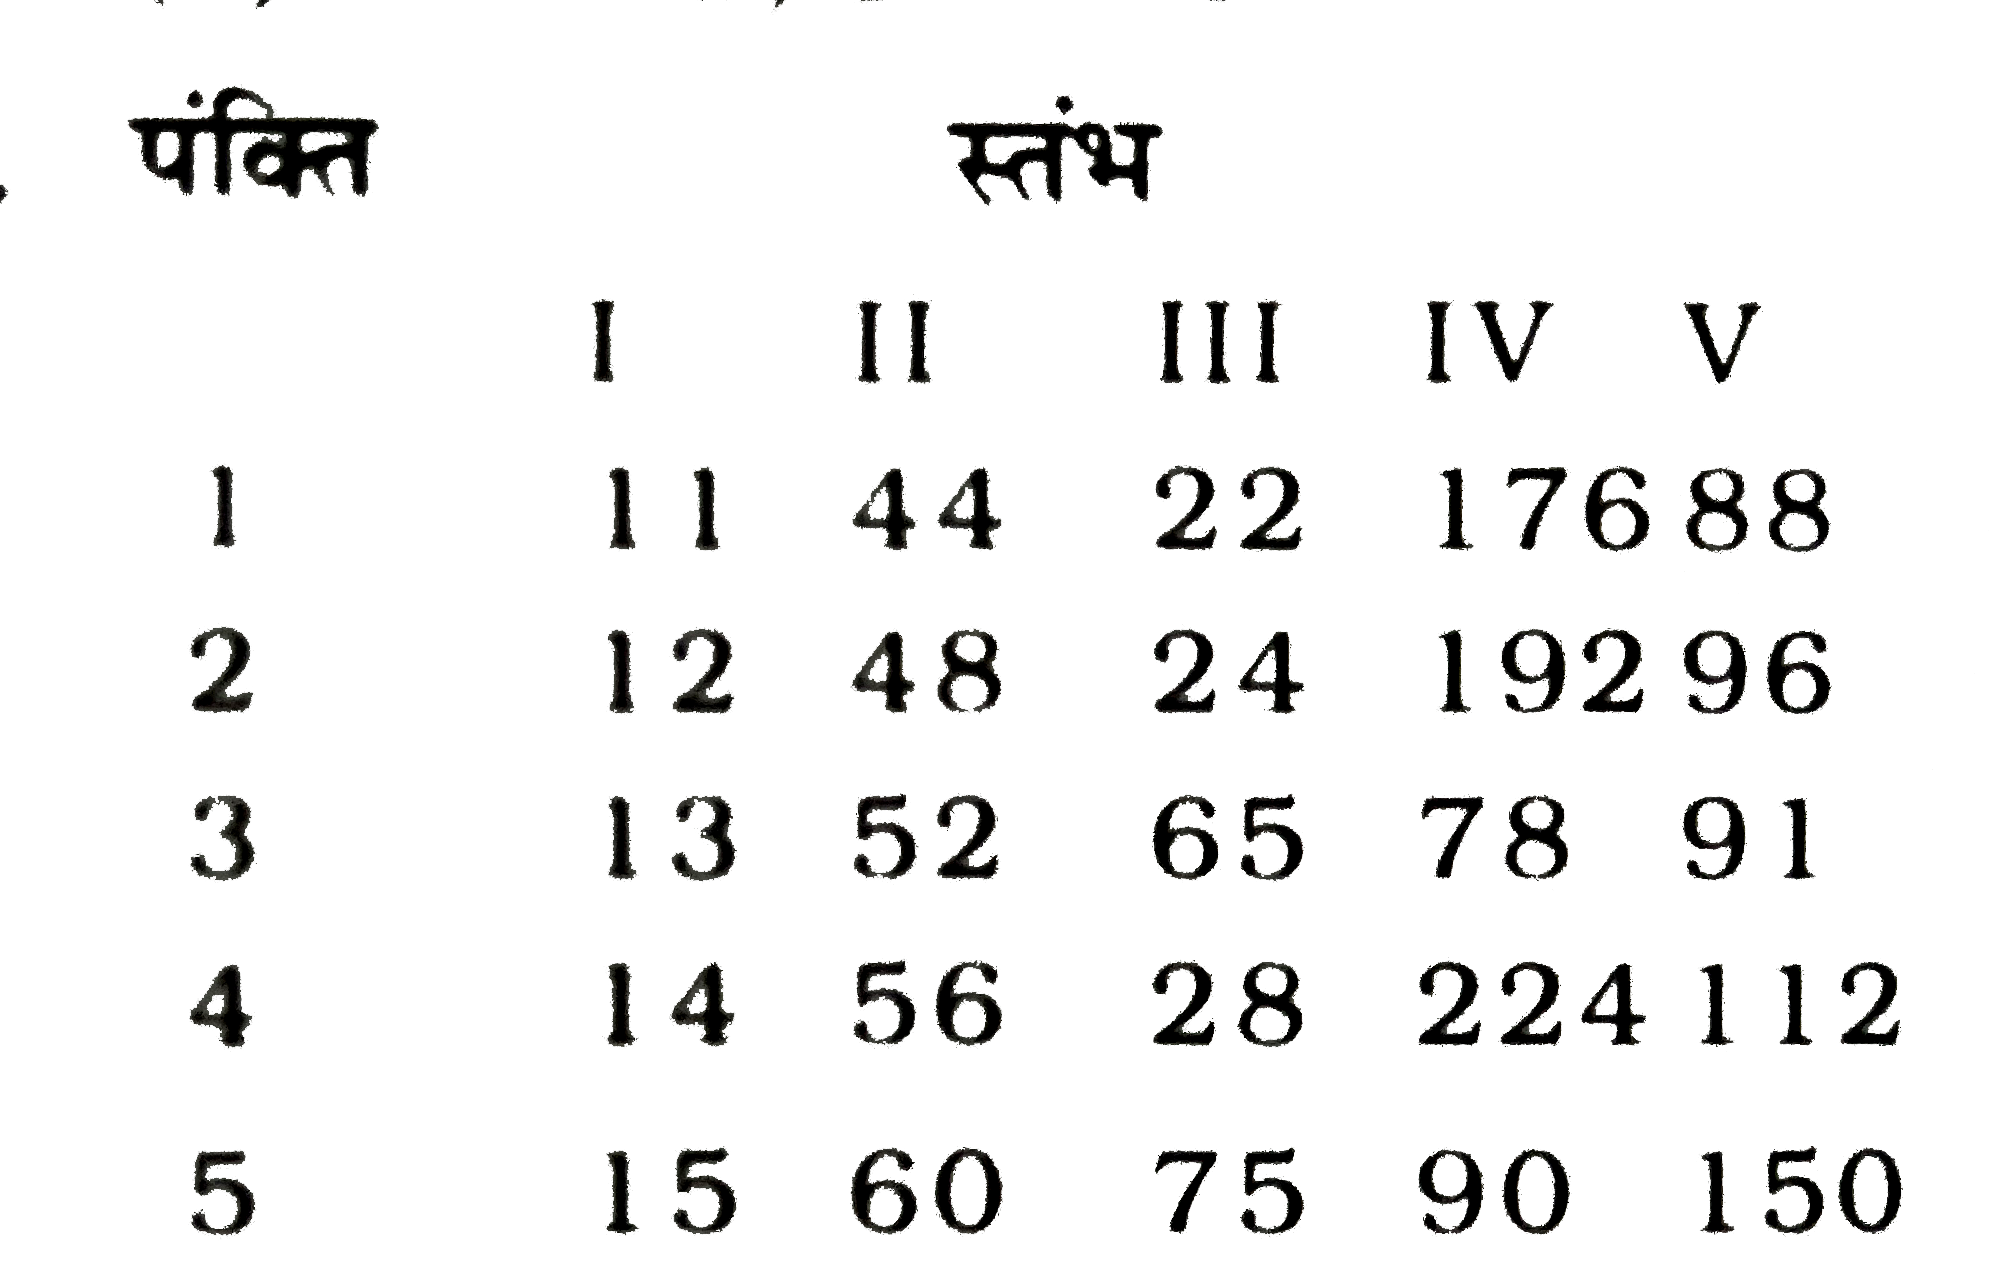 कुछ संख्याएं भिन्न -भिन्न पंक्तियाँ /स्तम्भों में दी गई है। इनमे से कौन-सी पंक्तियाँ/स्तम्भ आपस में किसी प्रकार संबधित / संबद्ध है?